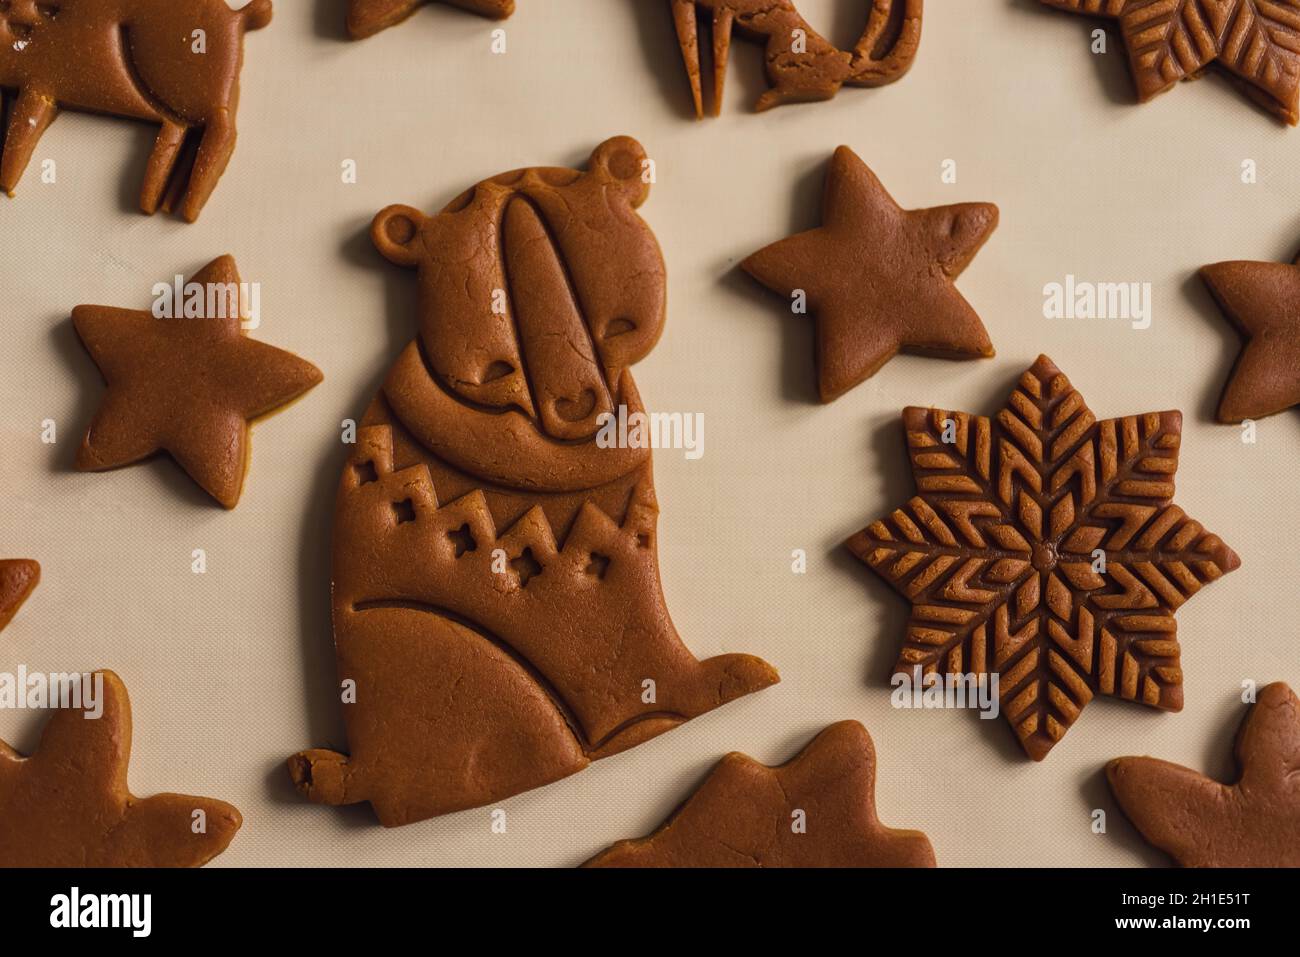 Motif de biscuits de pain d'épice de Noël sous forme d'animaux, flocon de neige Banque D'Images